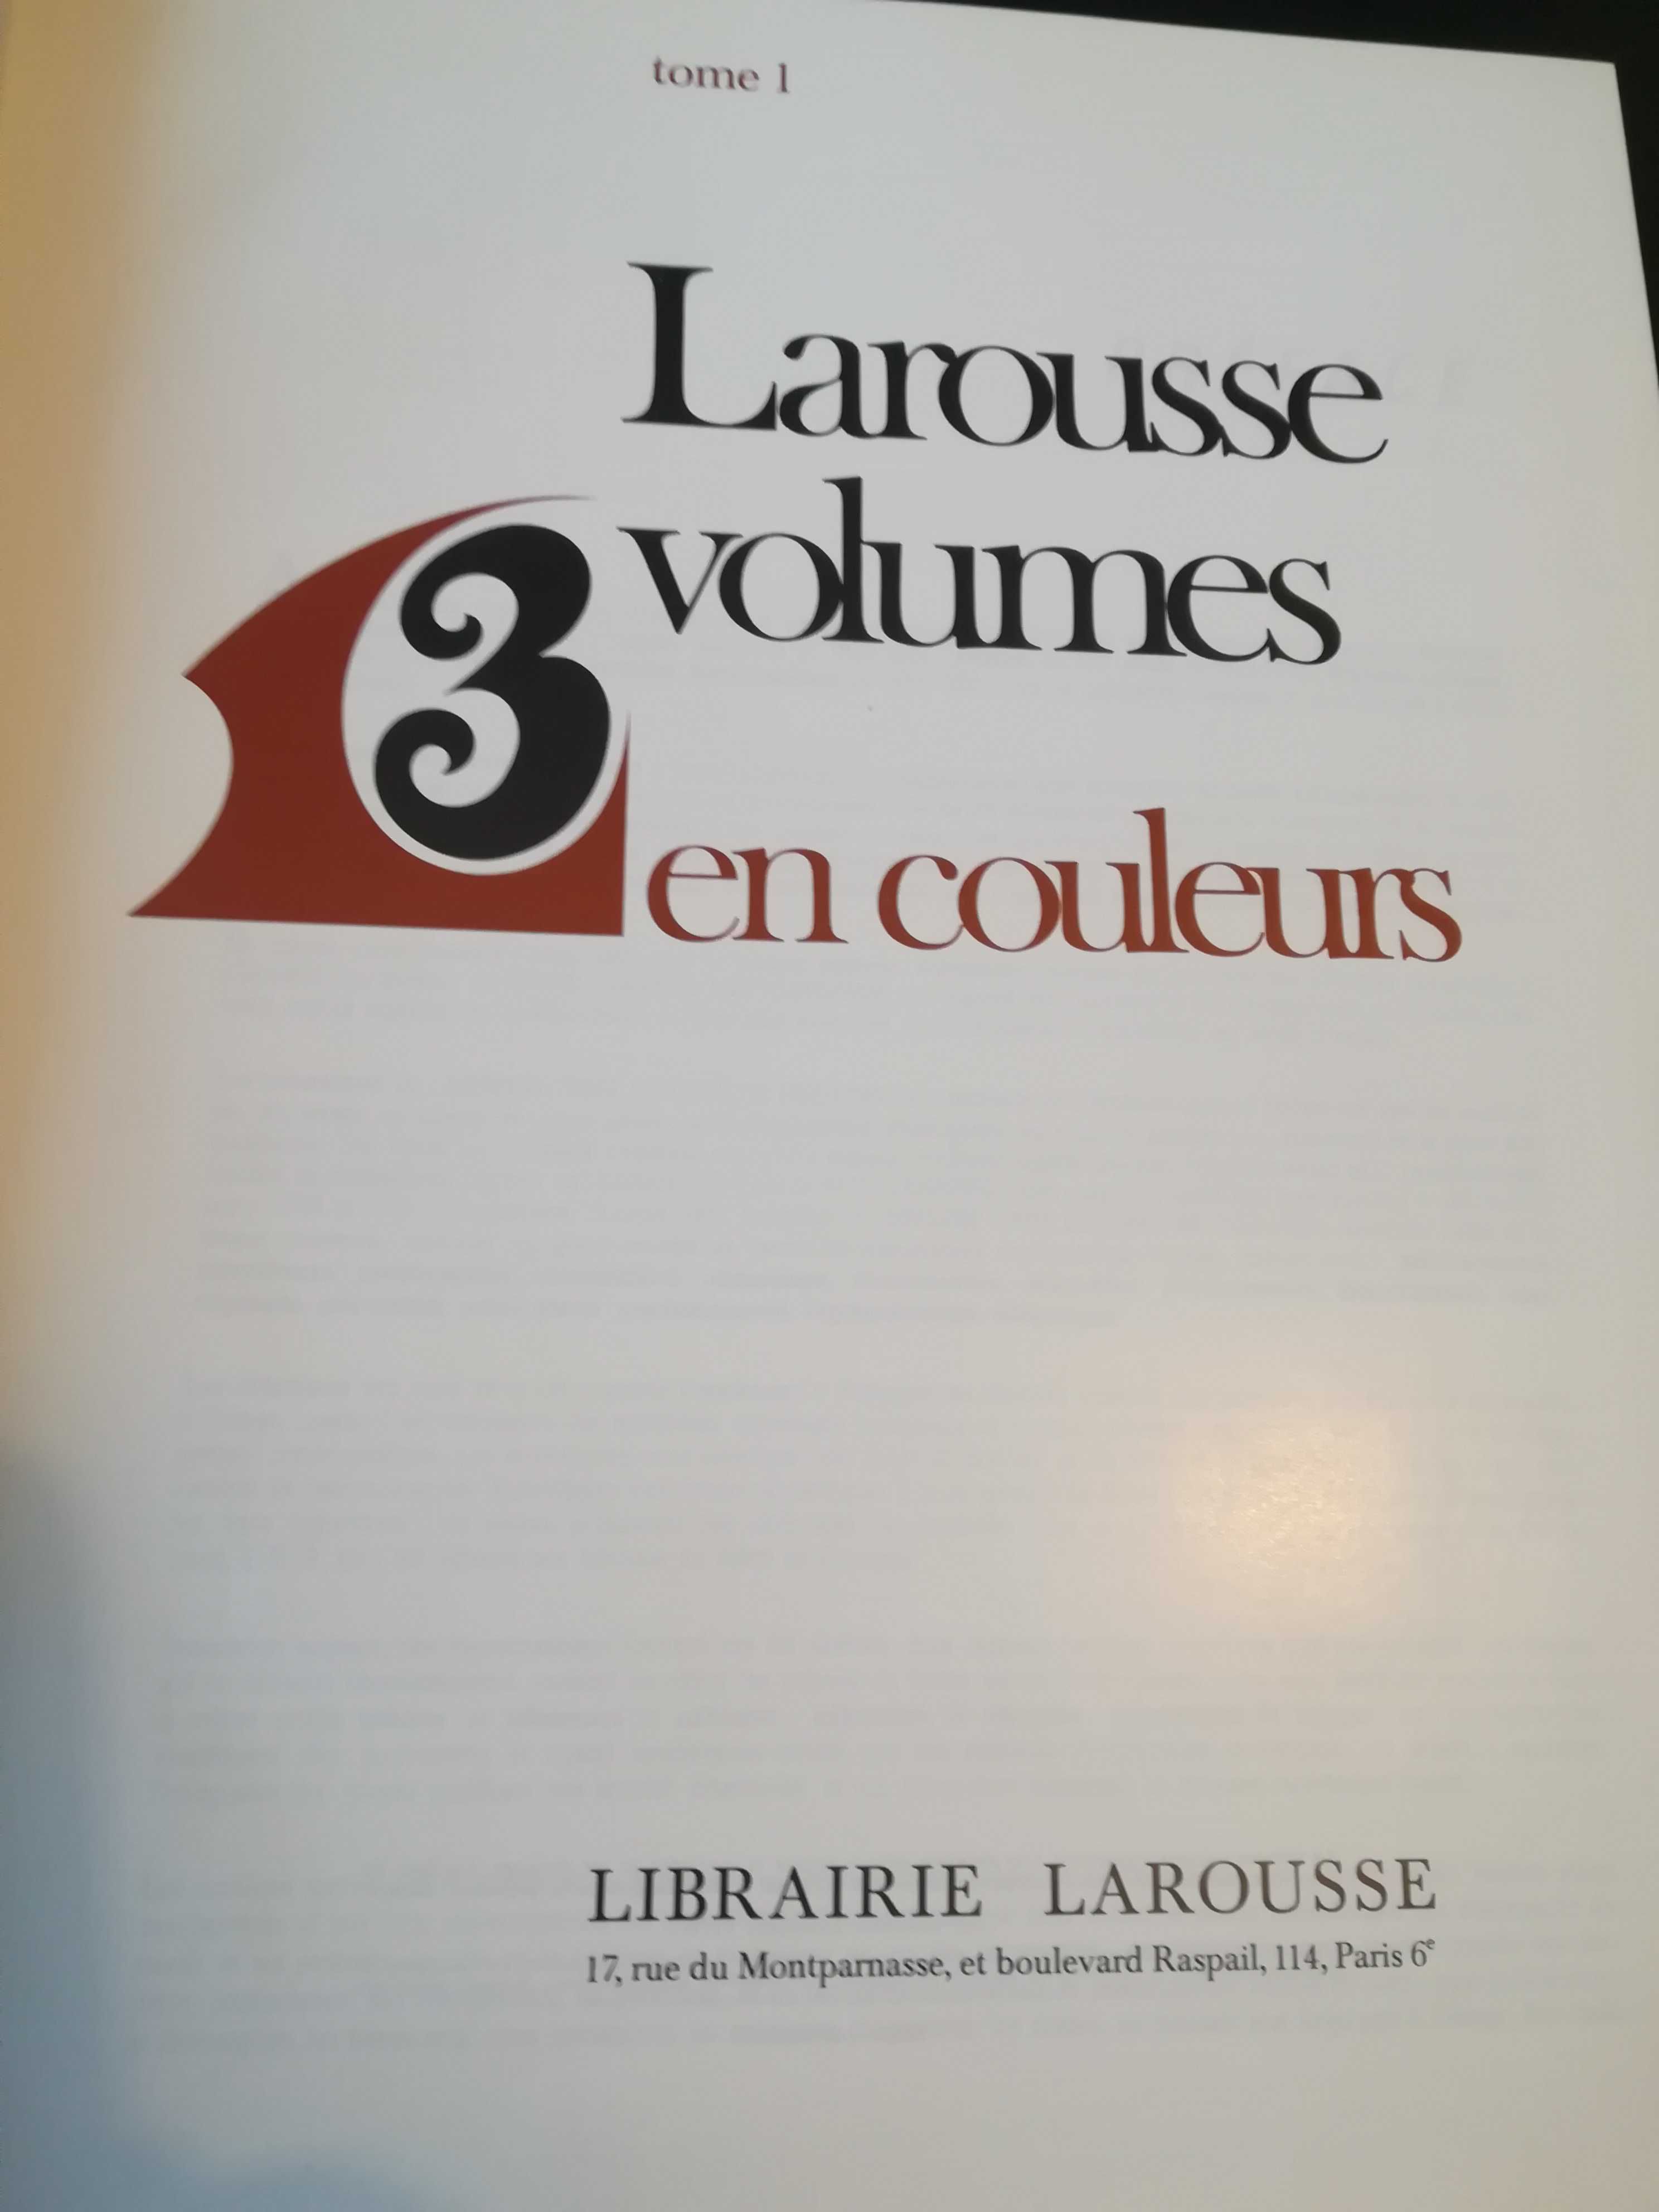 Vand dictionar Larousse TROIS VOLUMES en couleurs